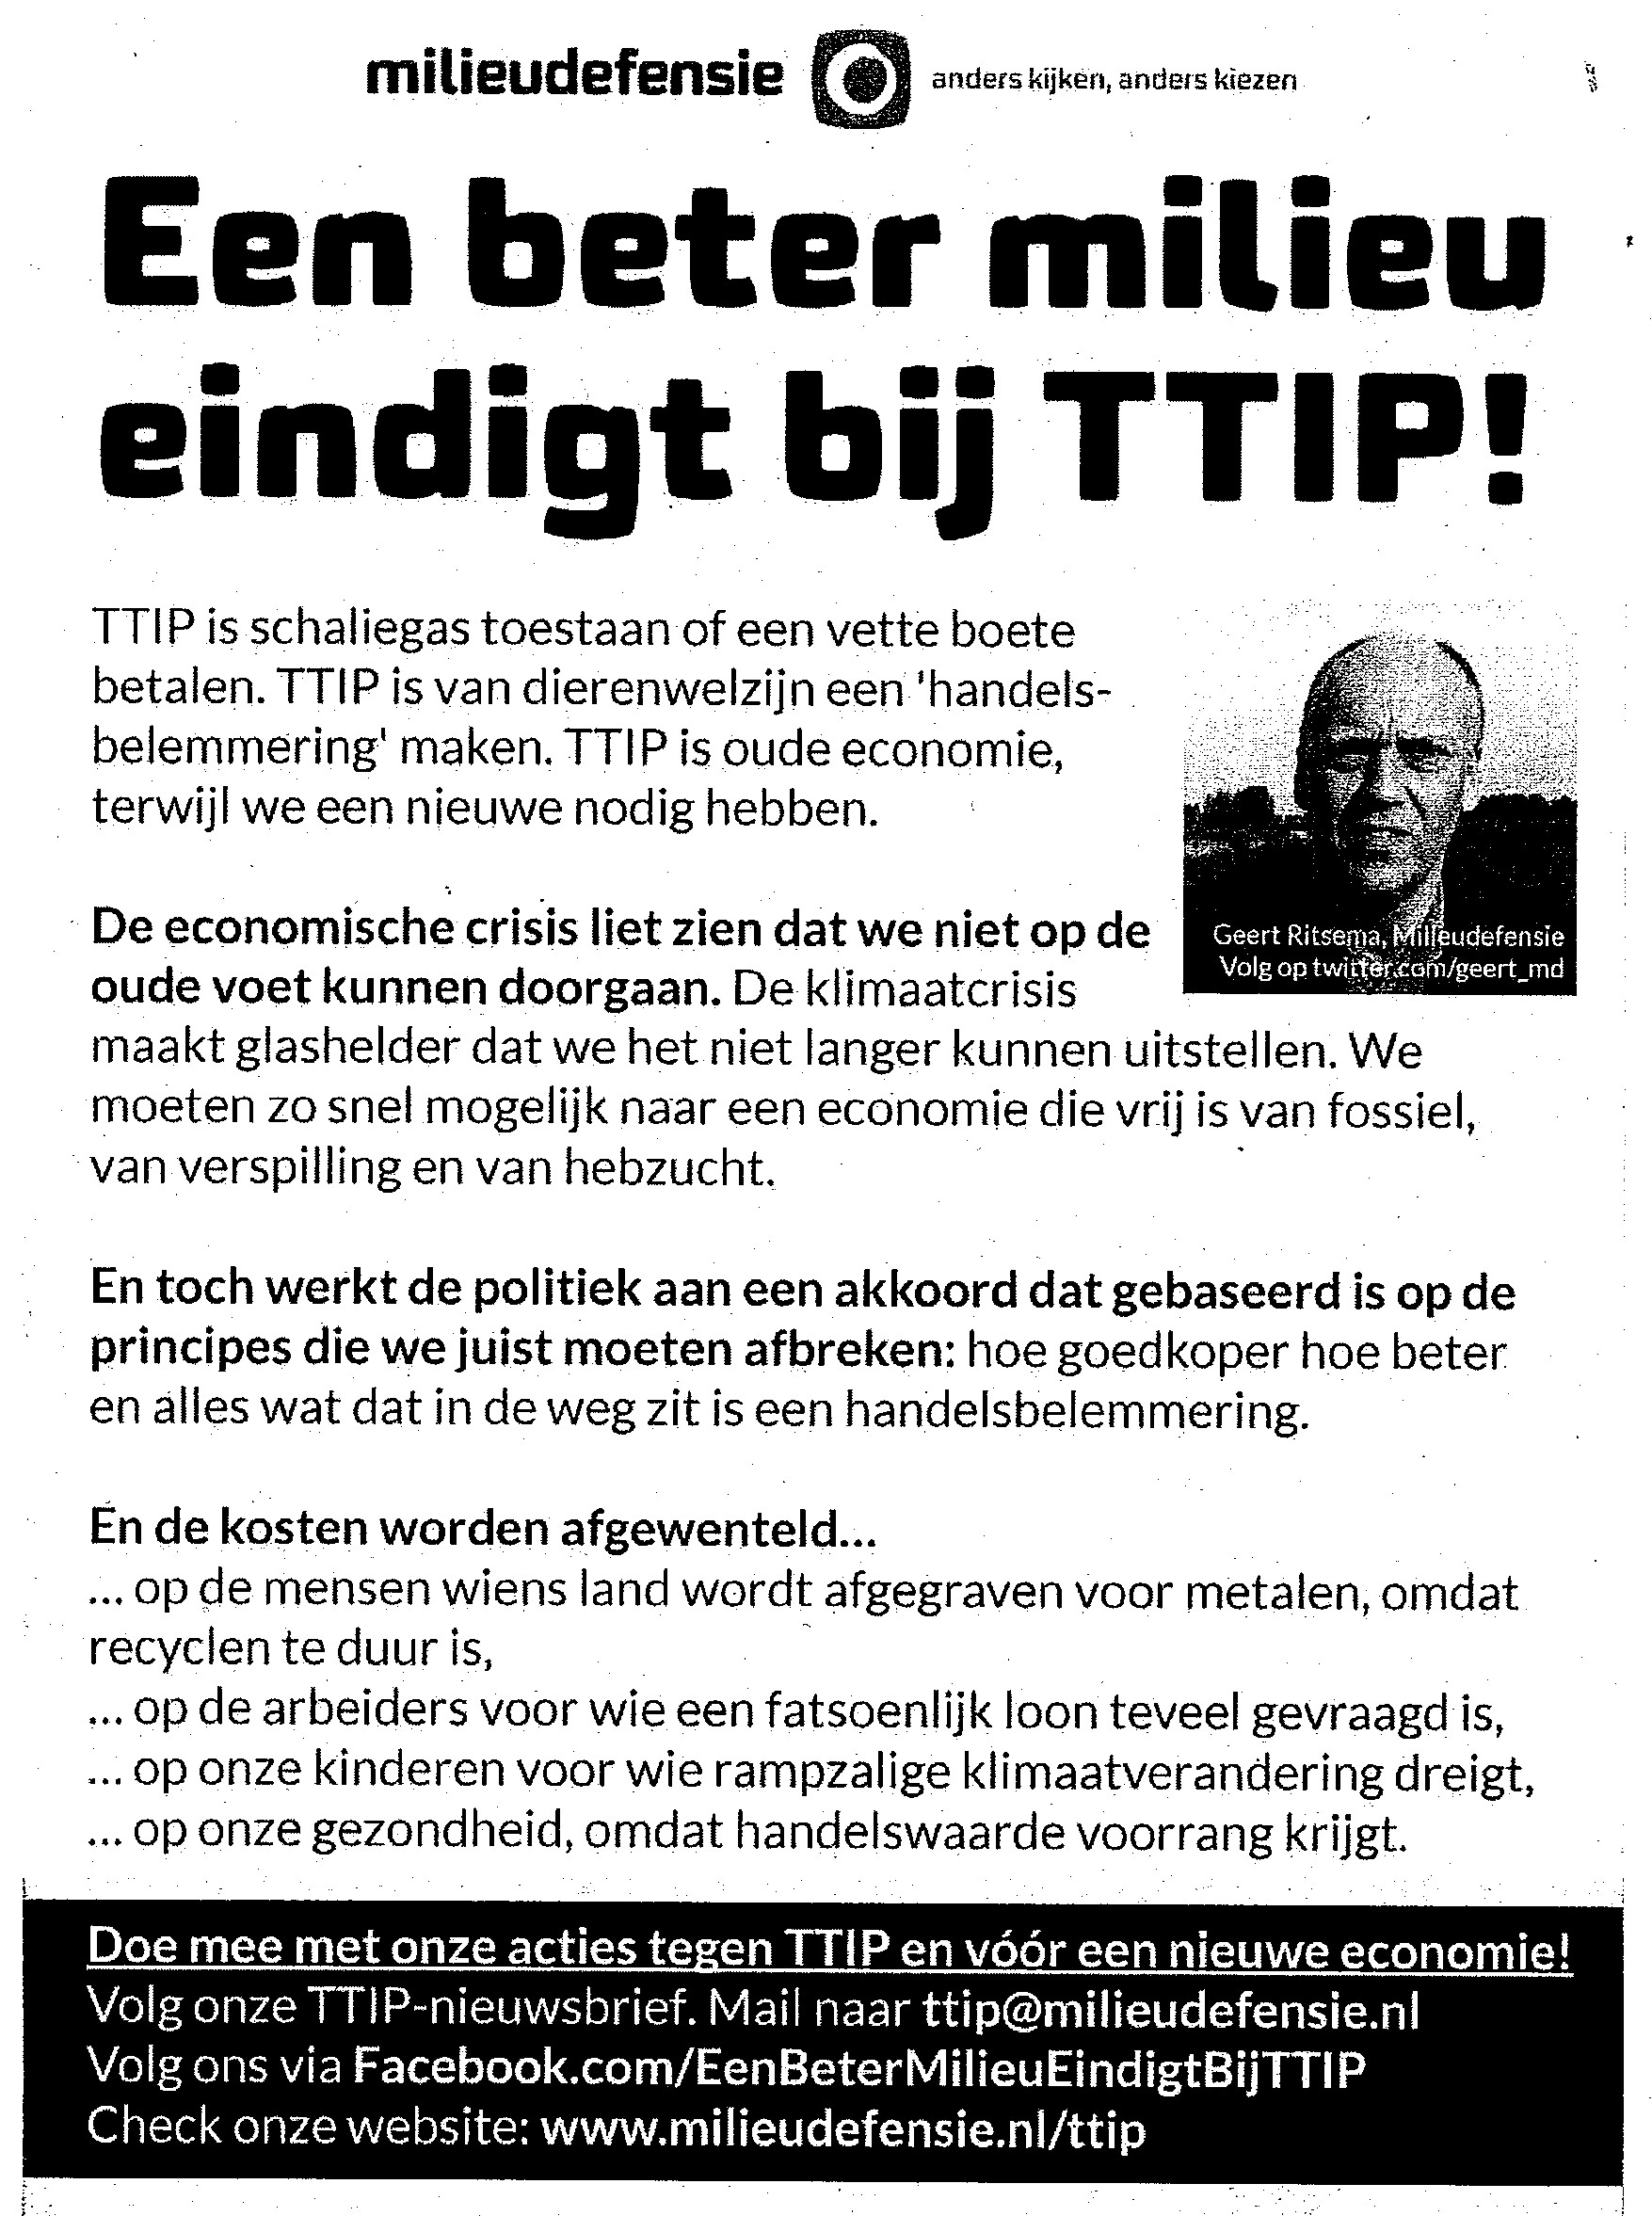 TTIPflyer_landelijk